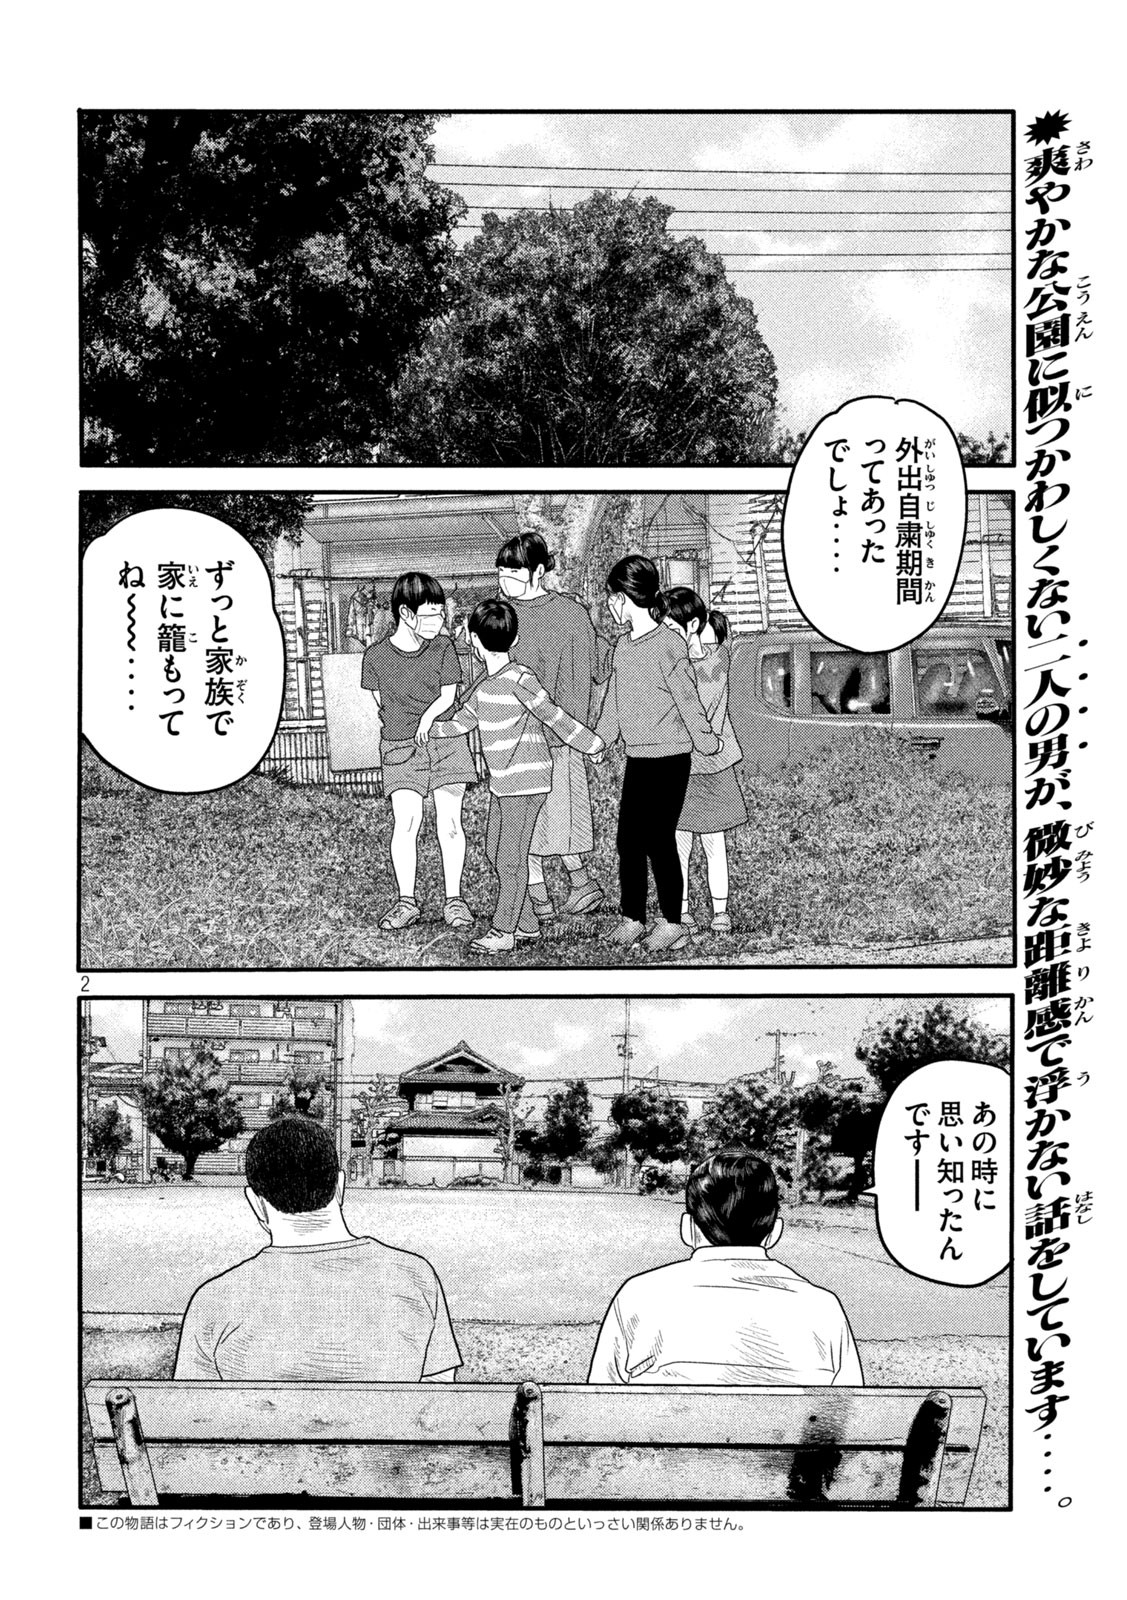 ザ・ファブル The Second Contact 第2話 - Page 2